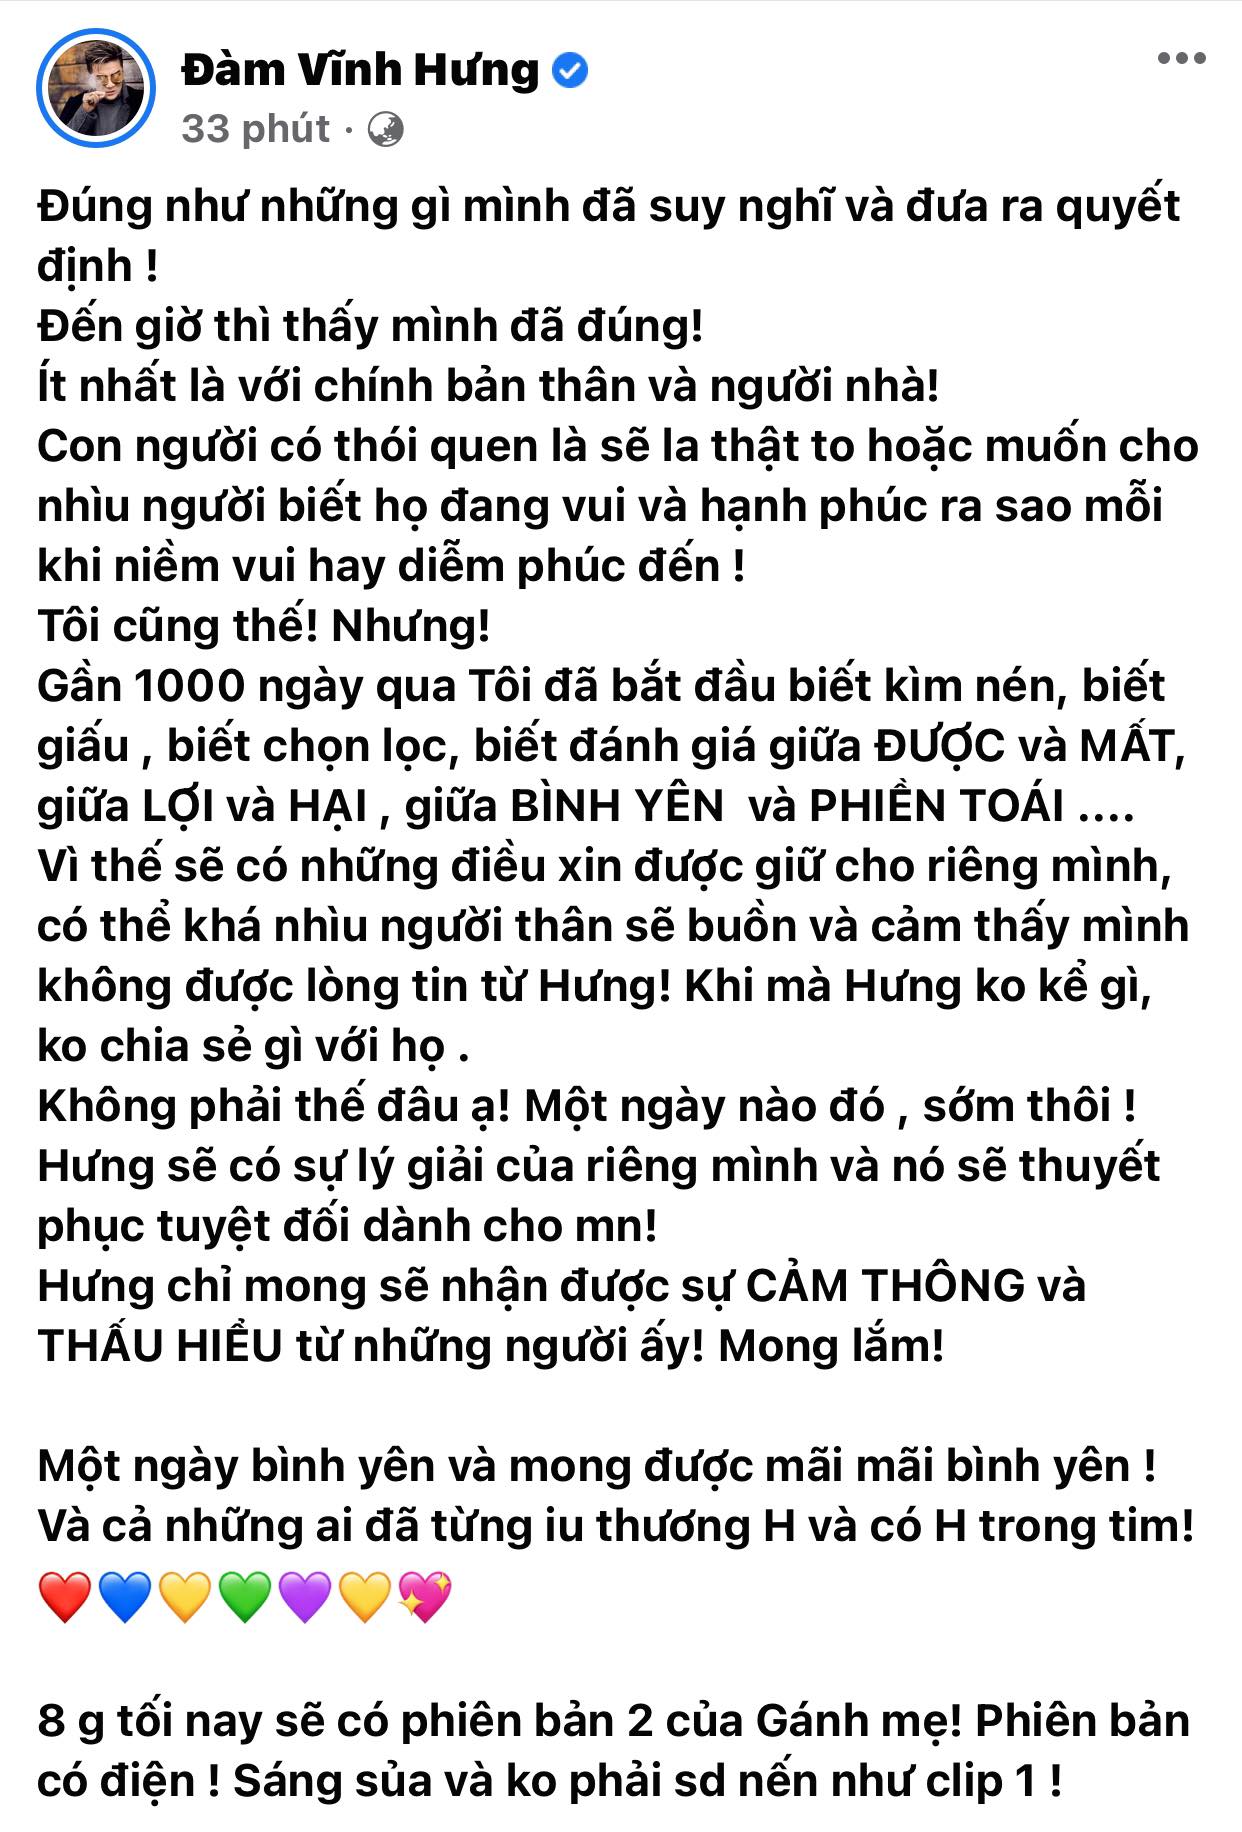 Dam-vinh-hung-viet-tam-thu-giai-bay-noi-ve-chuyen-khong-ngo-da-lam-suot-gan-3-nam-qua